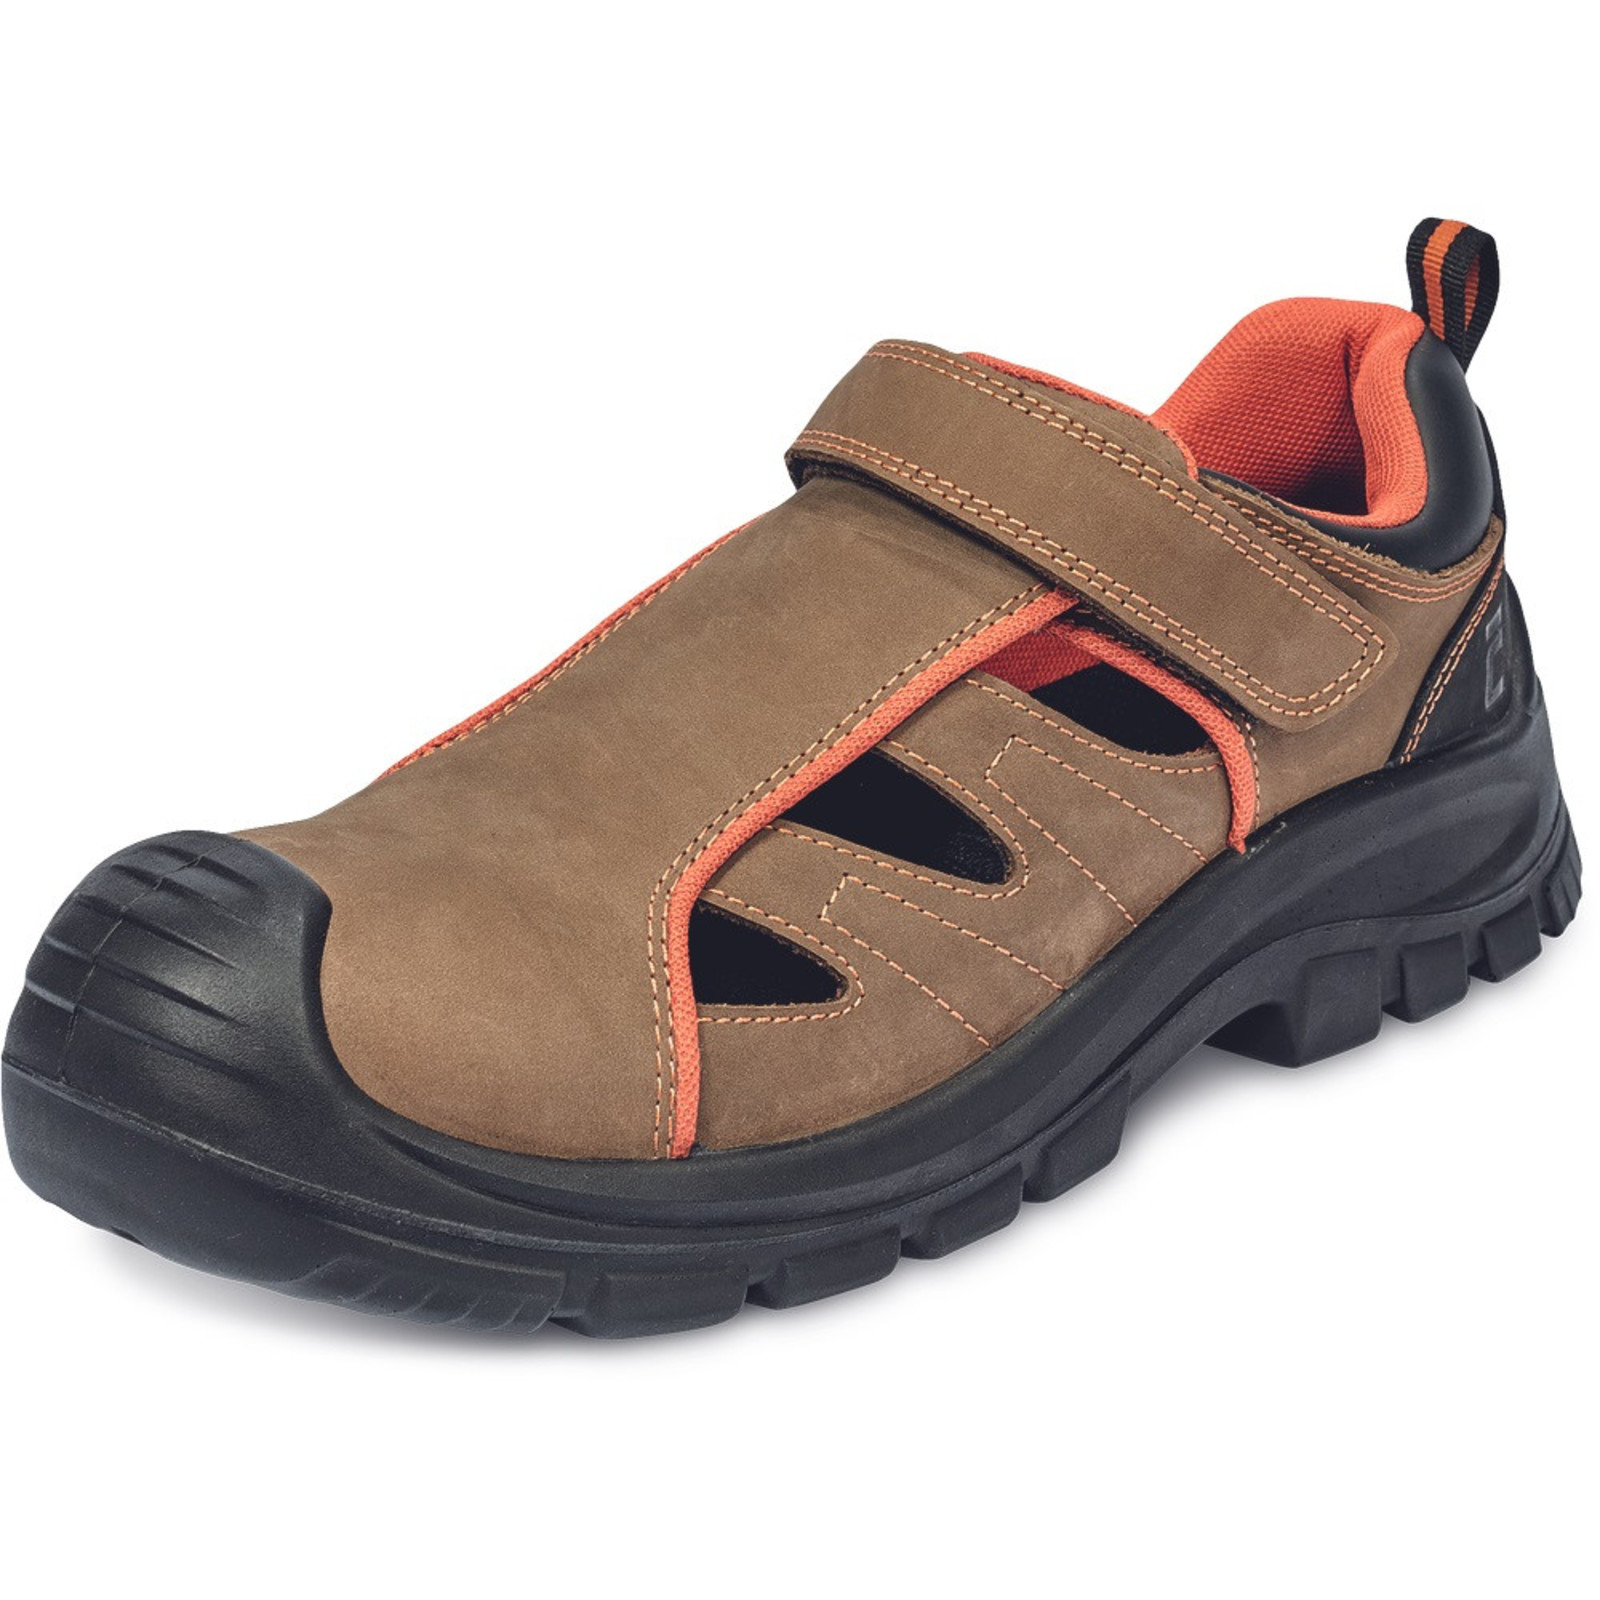 Bezpečnostné sandále Cerva Derril MF S1P SRC - veľkosť: 45, farba: hnedá